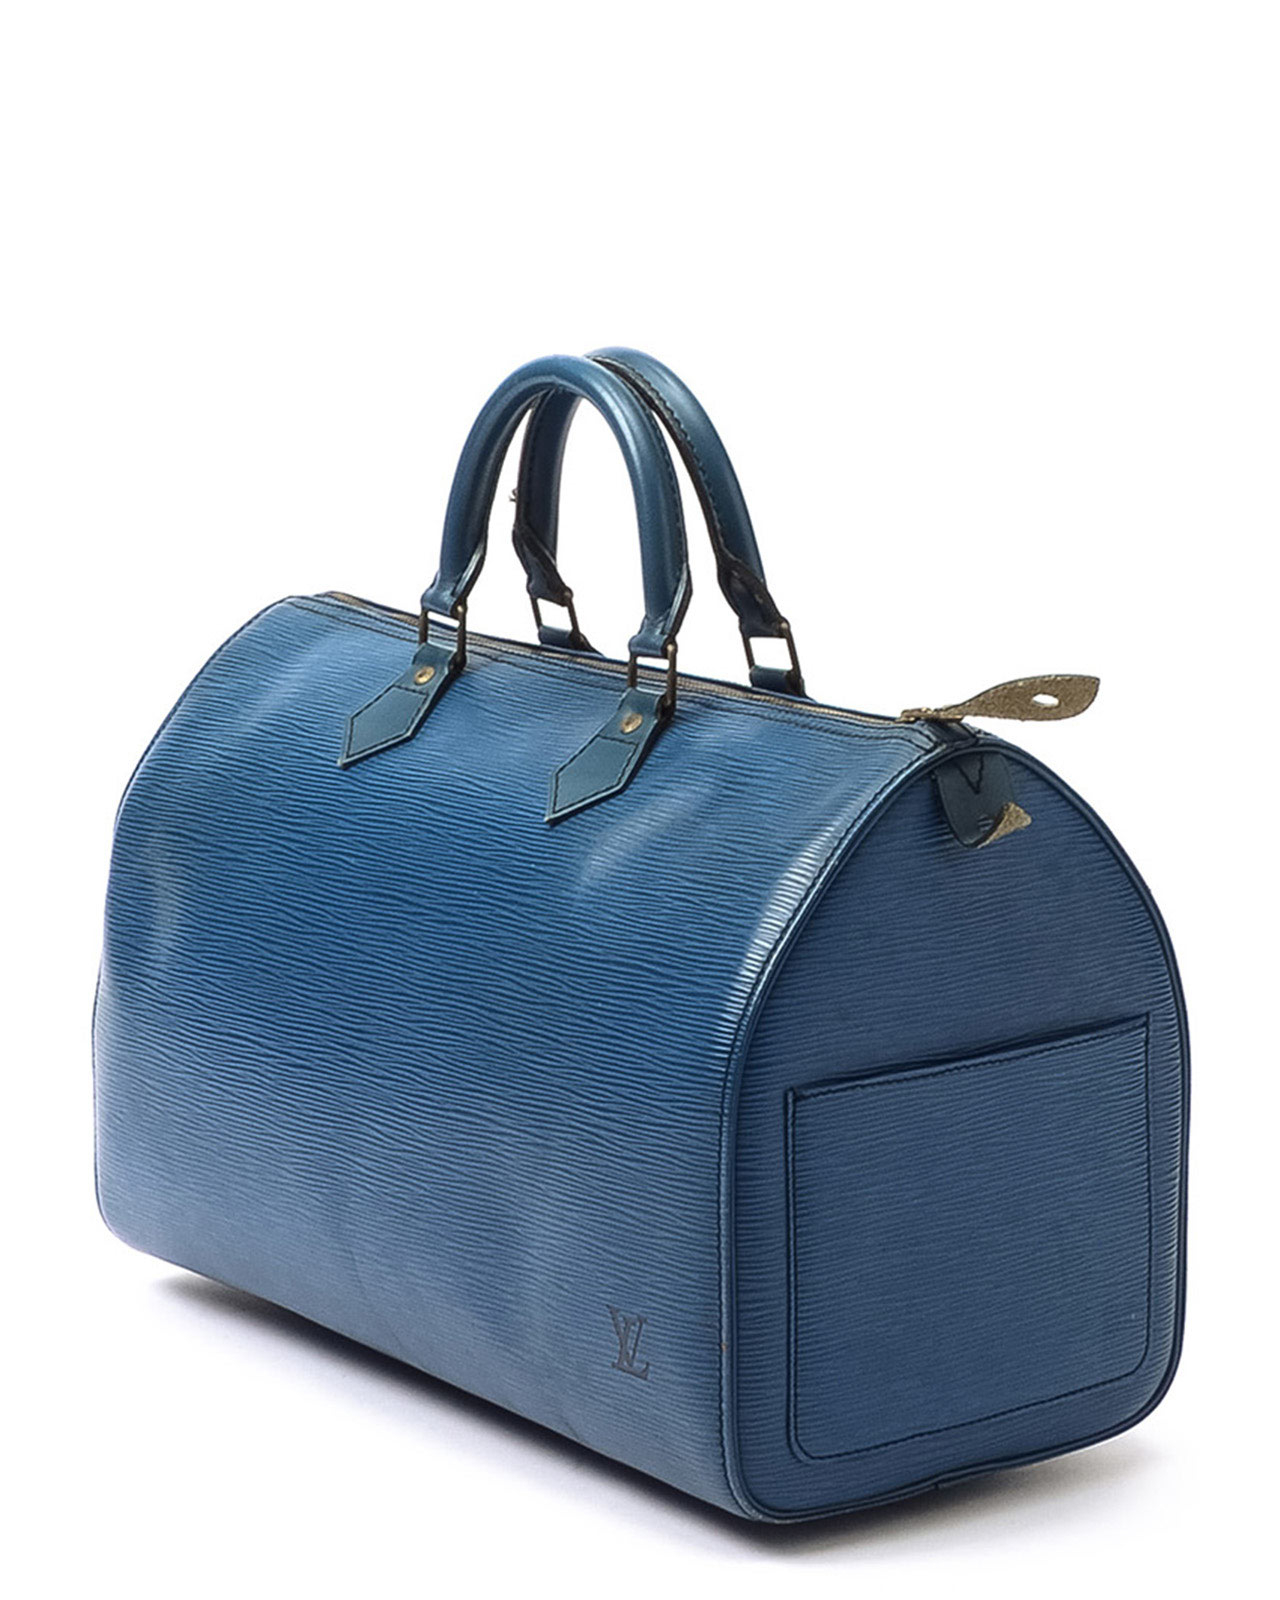 Louis Vuitton Epi Speedy 30 Handbag in Blue - Lyst